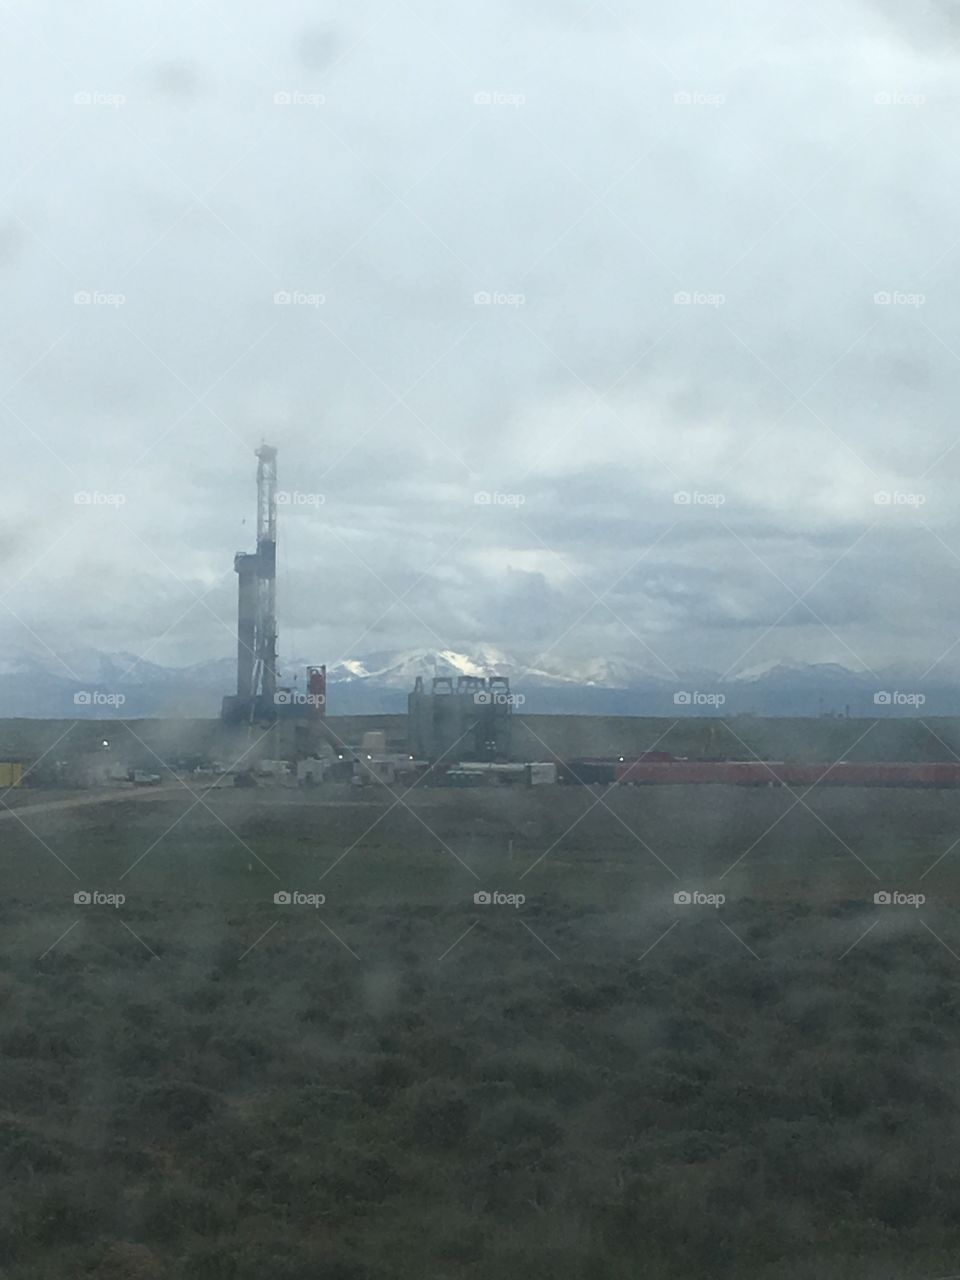 Oil field